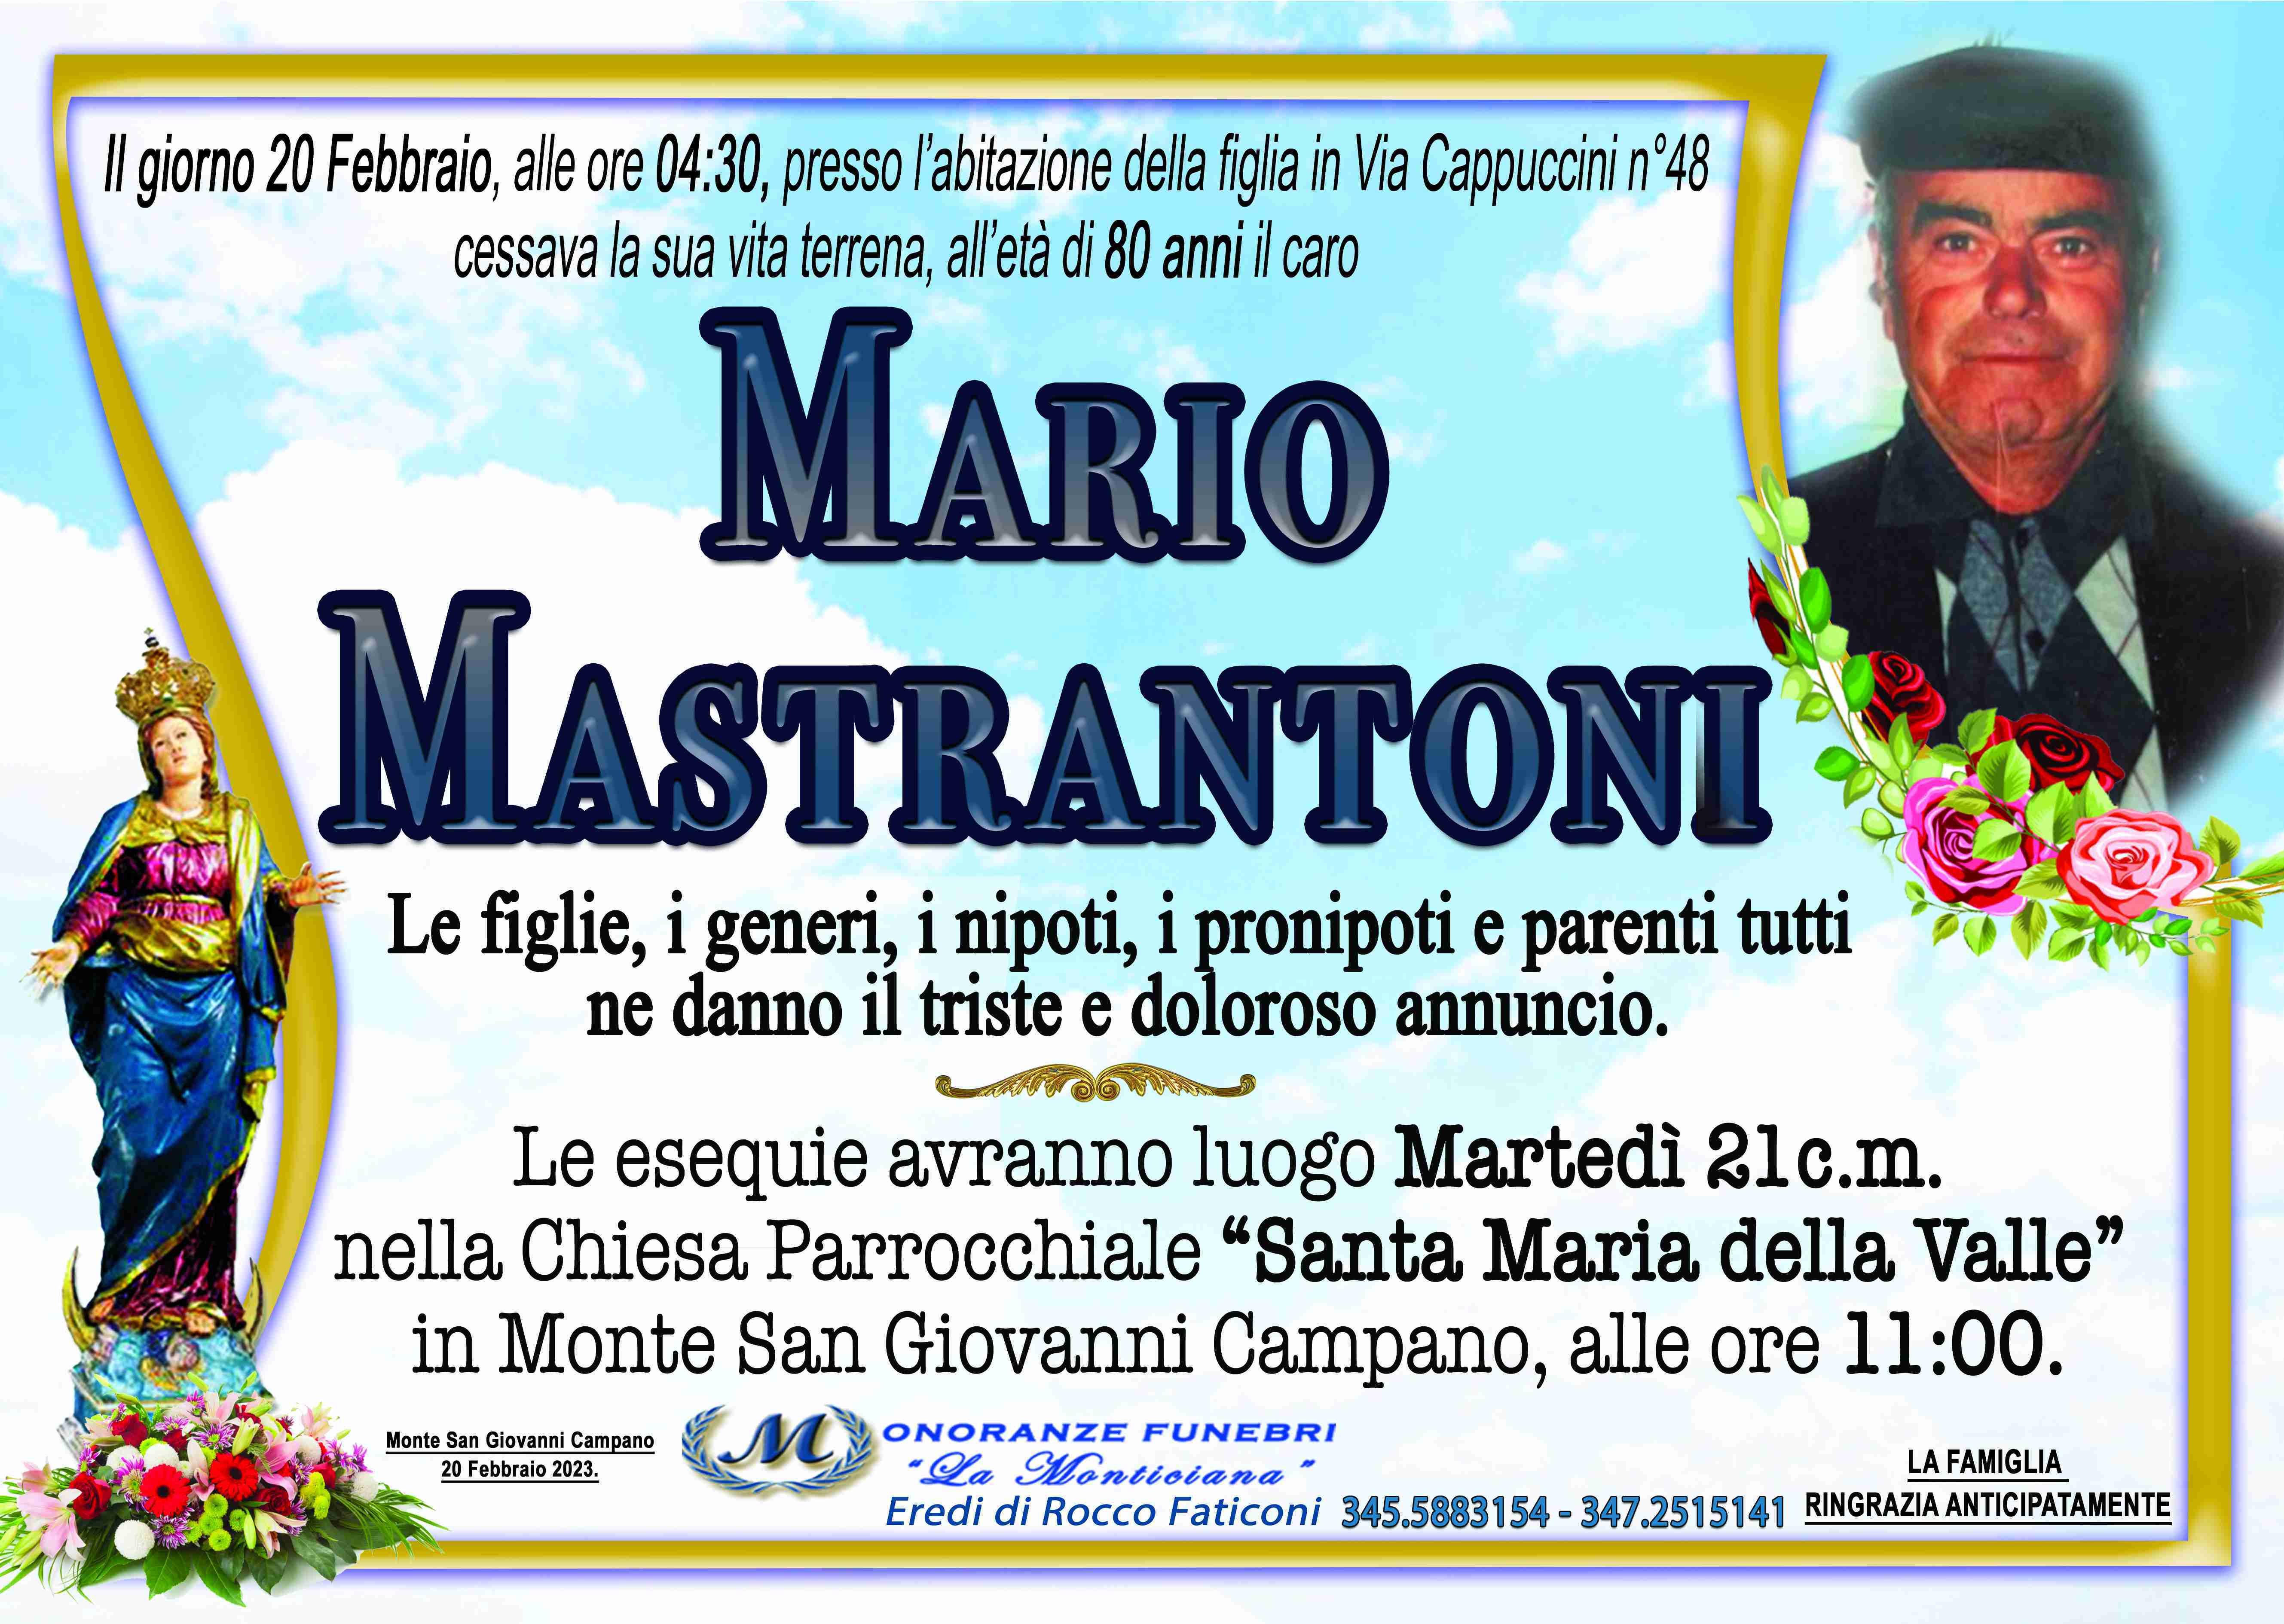 Mario Mastrantoni